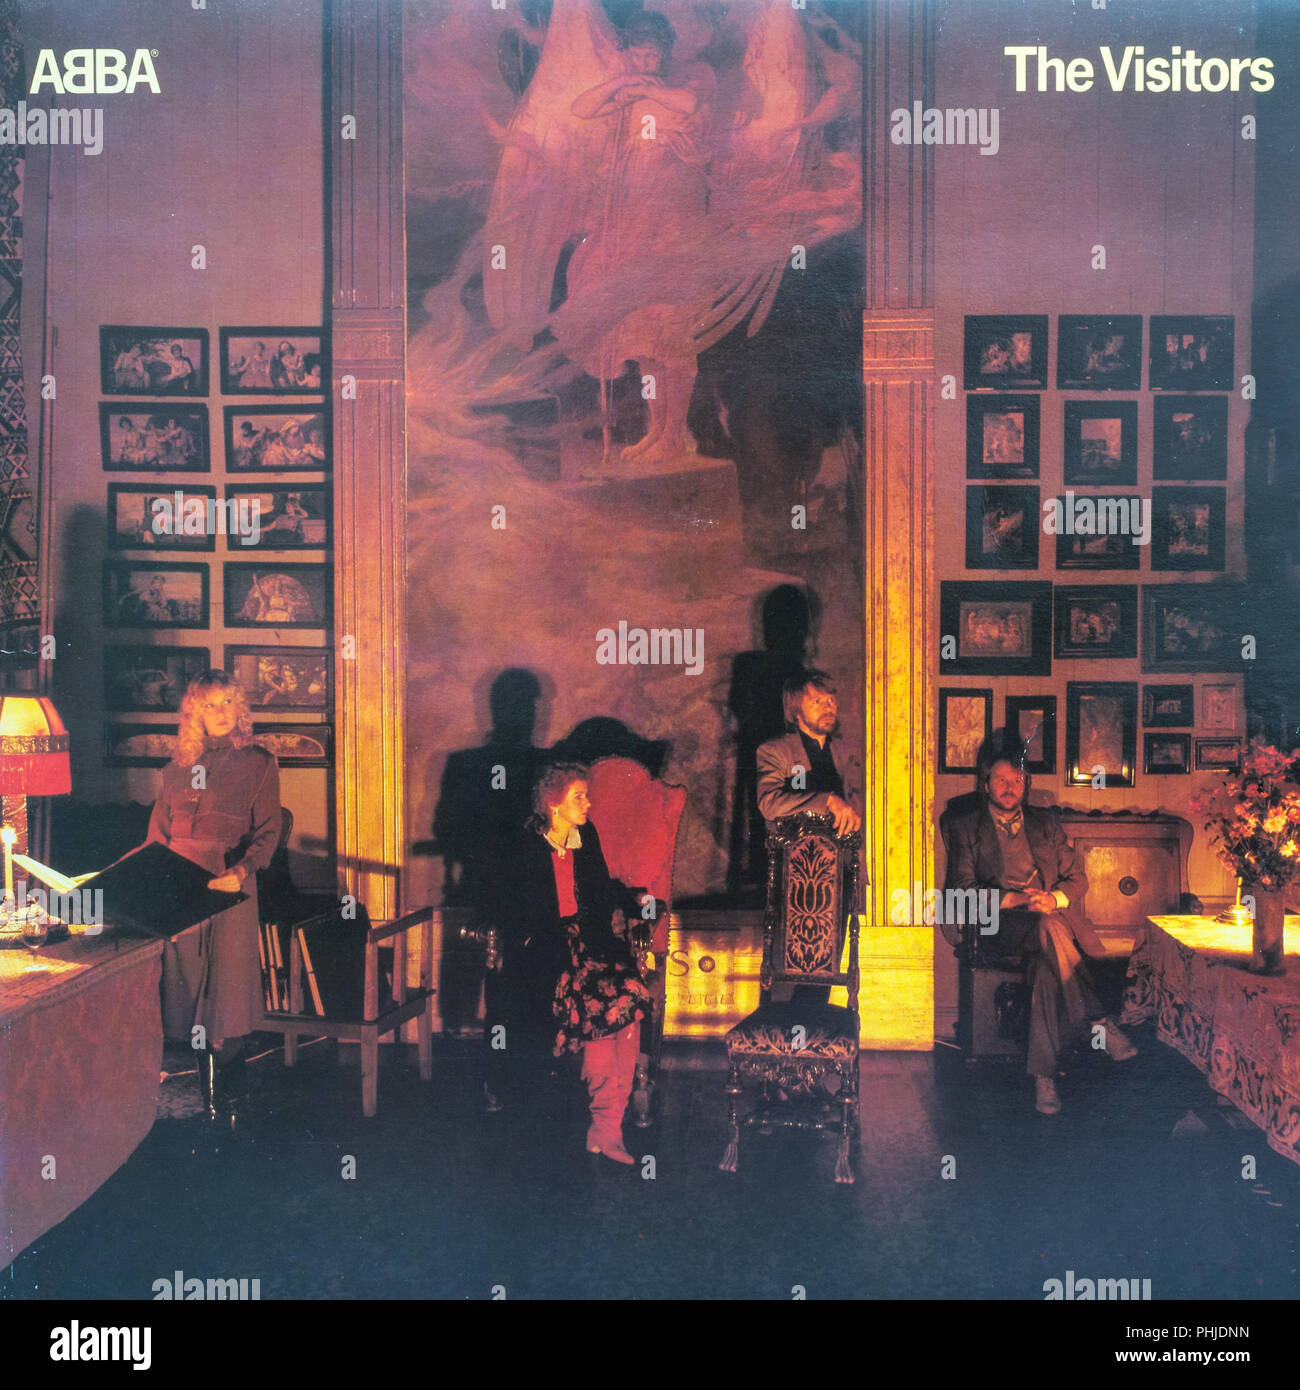 Abba The Visitors album cover Stock Photo